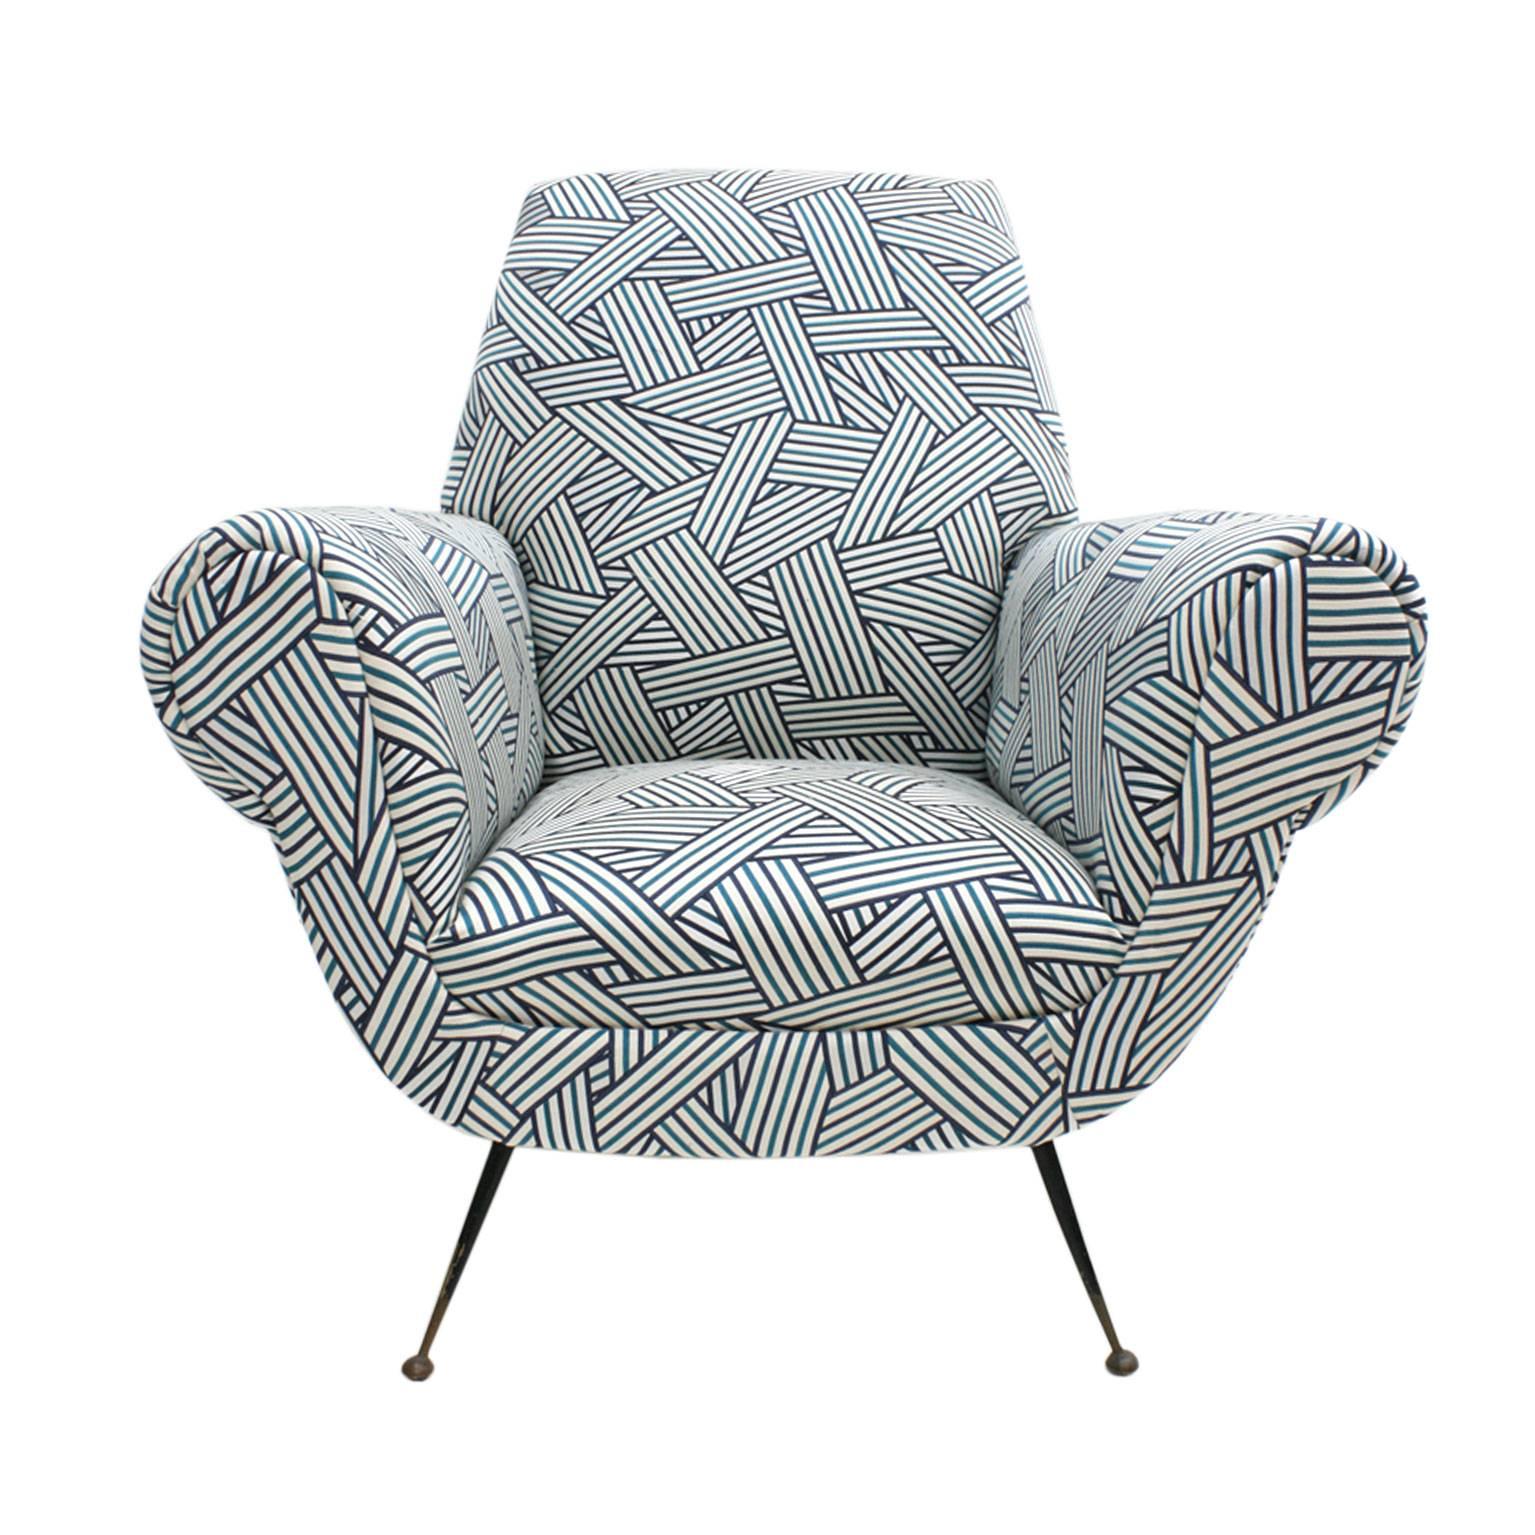 Paire de fauteuils conçus par Gigi Radice pour Minotti. Structure en bois massif, retapissé en tissu à motifs de coton modèle 